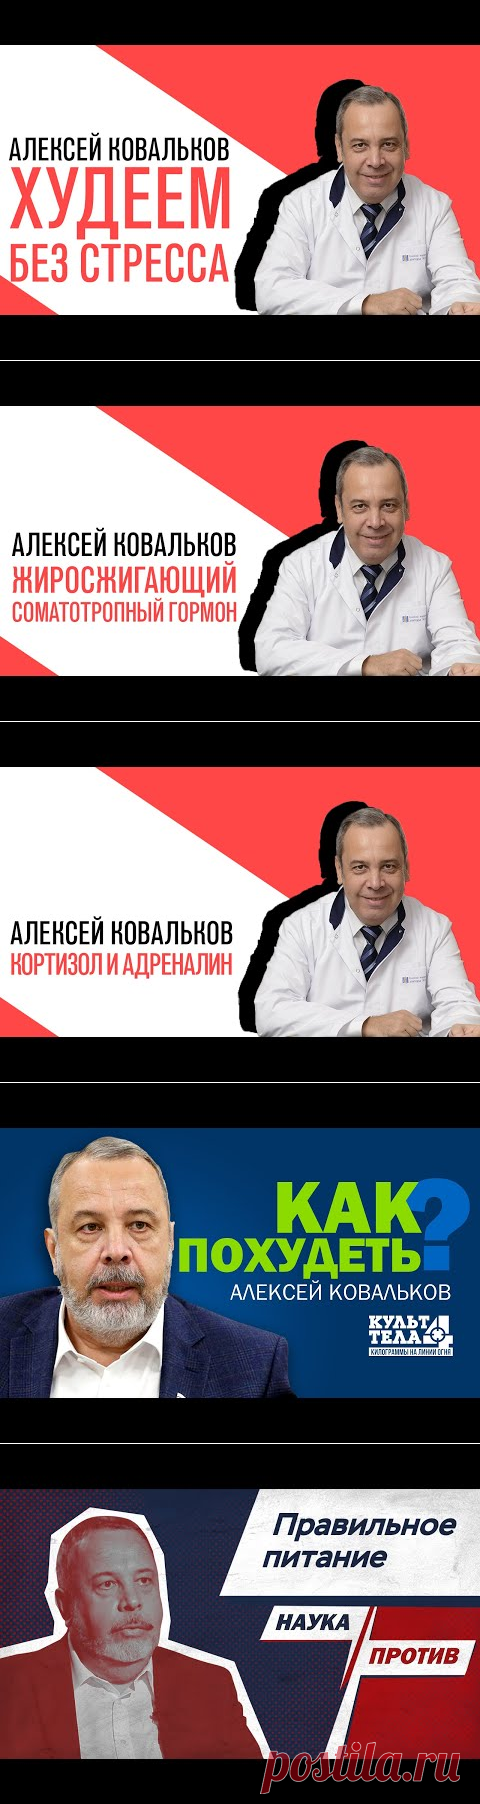 Проект Алексея Ковалькова «Есть или не есть», Михаил Хорс, Как похудеть без стресса - YouTube